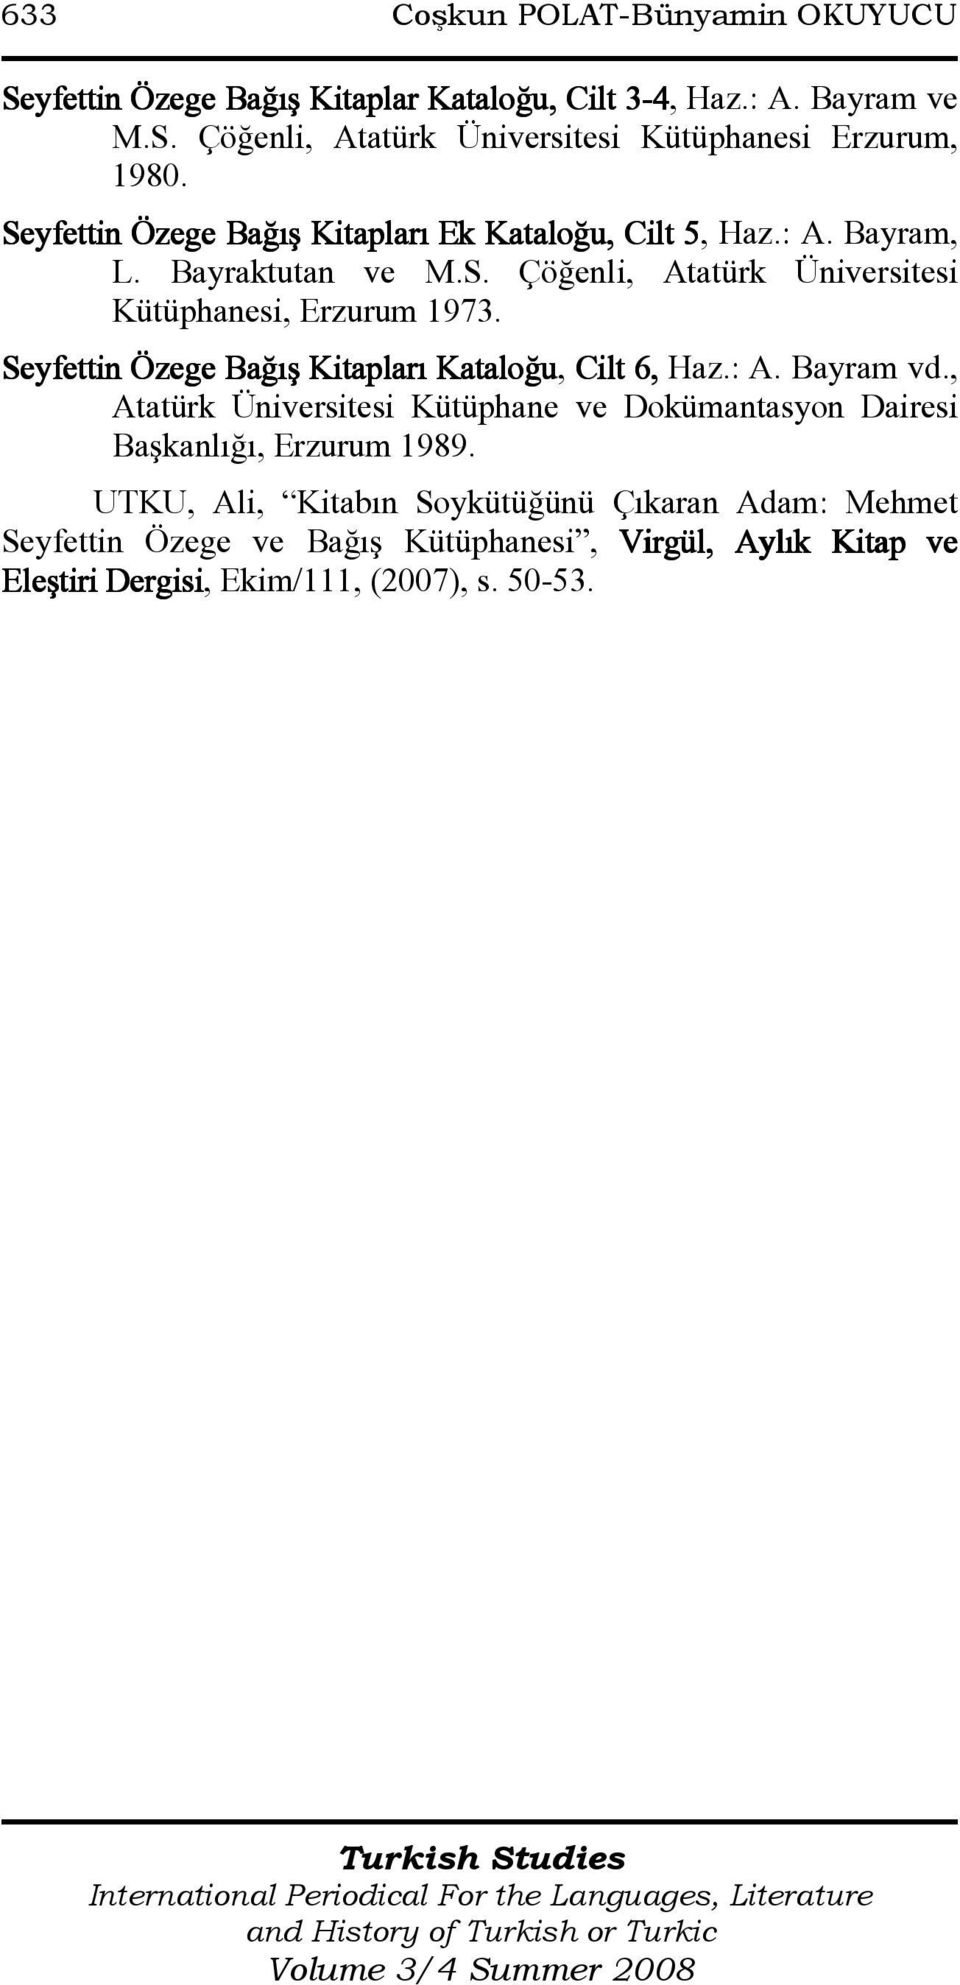 Seyfettin Özege Bağış Kitapları Kataloğu, Cilt 6, Haz.: A. Bayram vd., Atatürk Üniversitesi Kütüphane ve Dokümantasyon Dairesi Başkanlığı, Erzurum 1989.